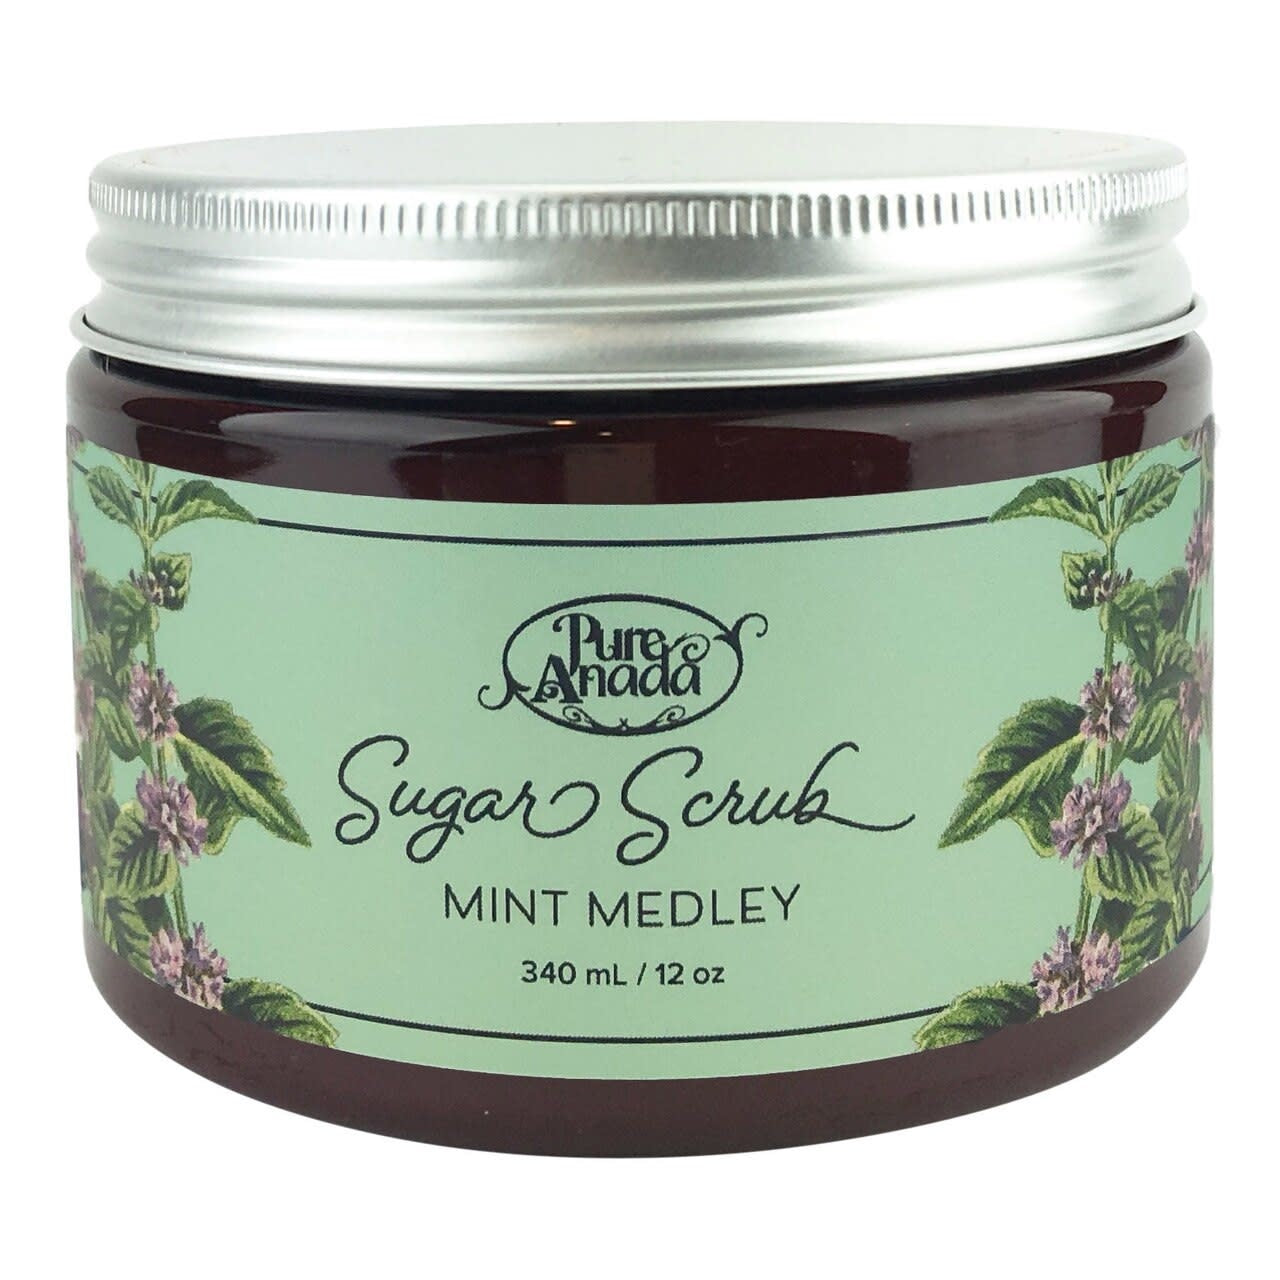 Pure Anada Sugar Scrub Mint Medley 340ml